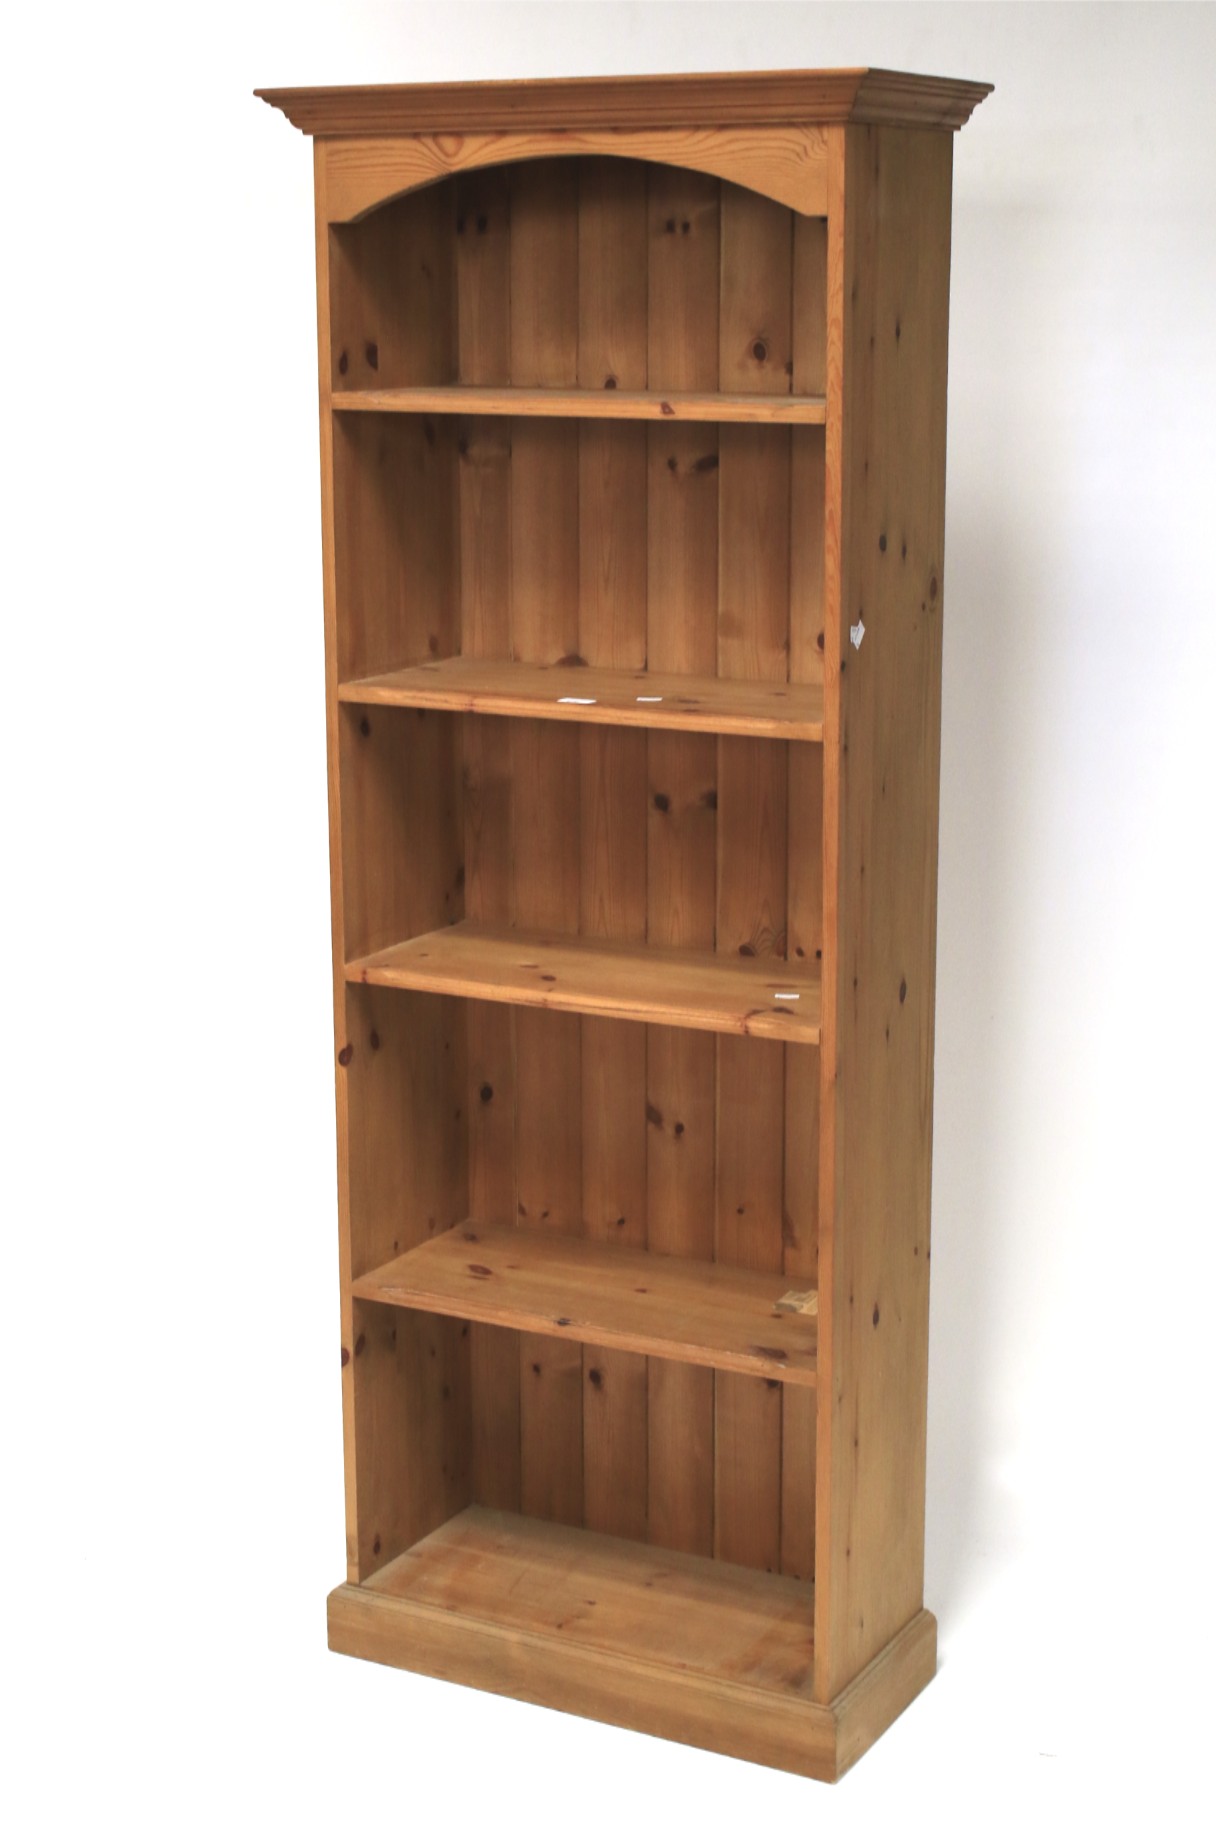 A five shelf pine bookcase.